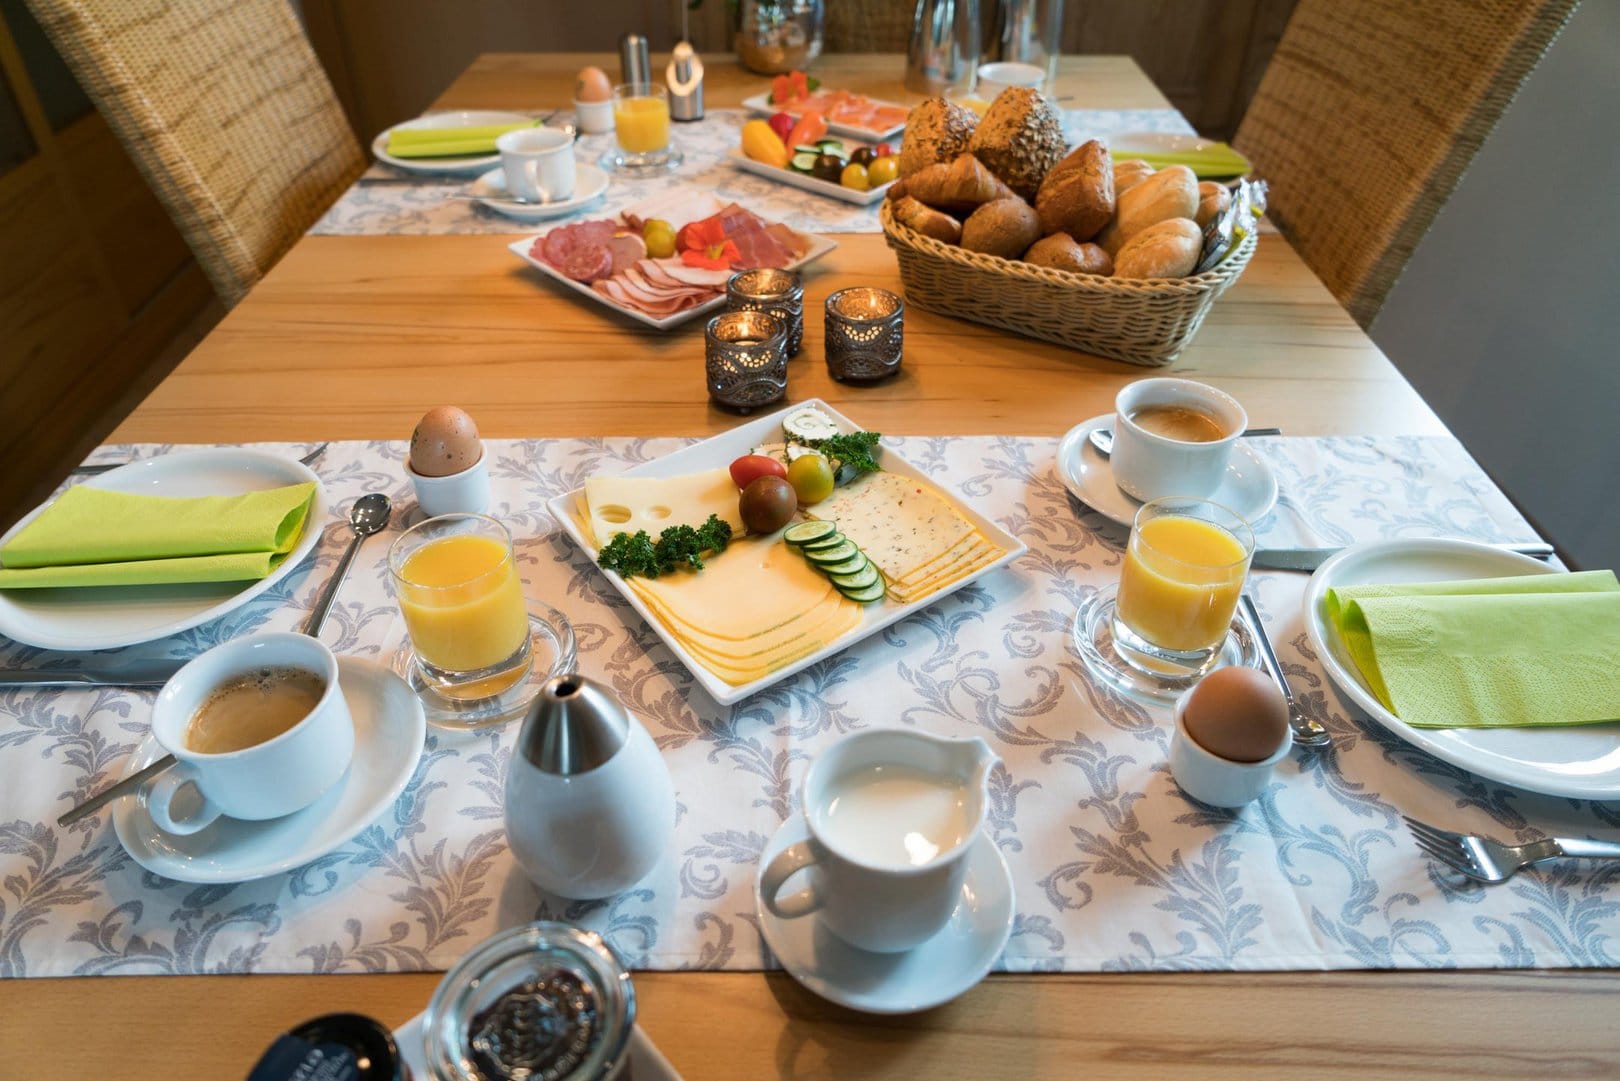 Ein Frühstückstisch, reichlich gedeckt mit Kaffeetassen, Frühstückseiern, Orangensaft, Wurst, Käse und Brot.